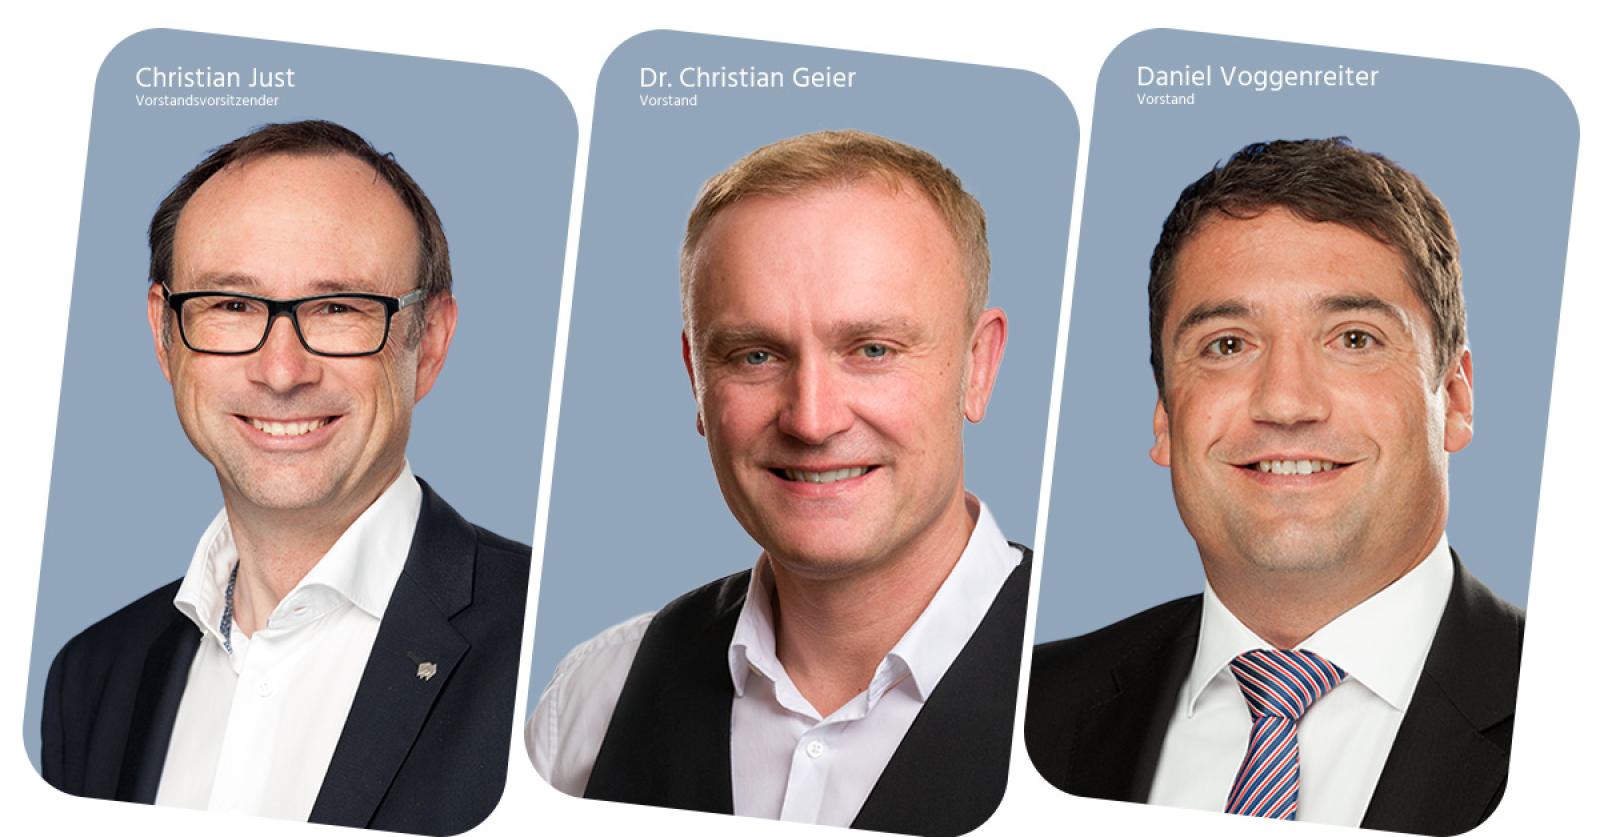 Christian Just, Dr. Christian Geier, Daniel Voggenreiter, Vorstände der FP Finanzpartner AG